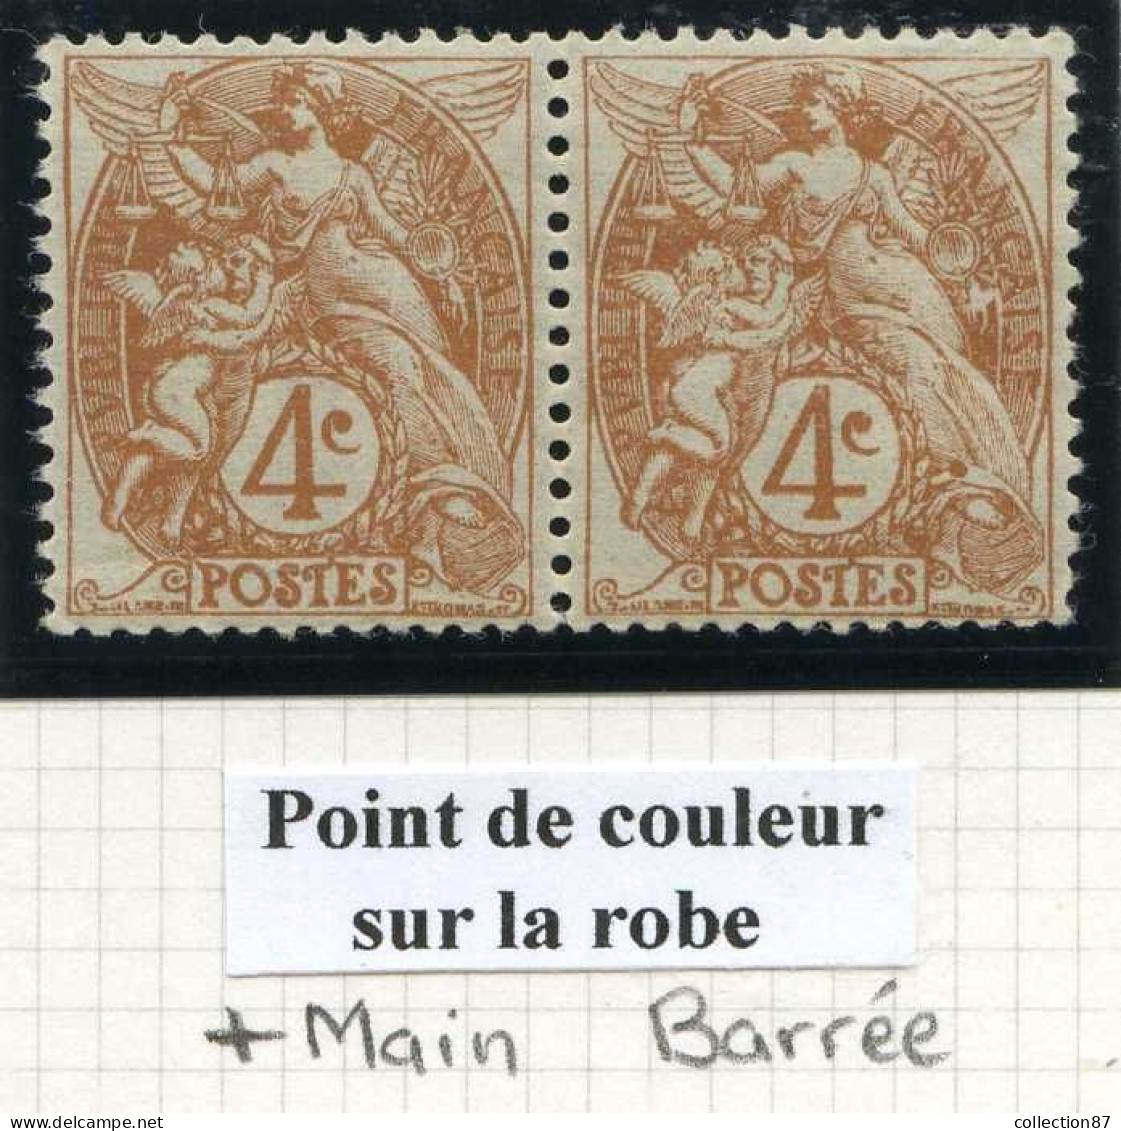 Réf 83 > FRANCE  TYPE BLANC < N° 110 * * Variété < Main Barrée + Tache En Bas Sur La Robe < Neuf Luxe * * MNH - 1900-29 Blanc